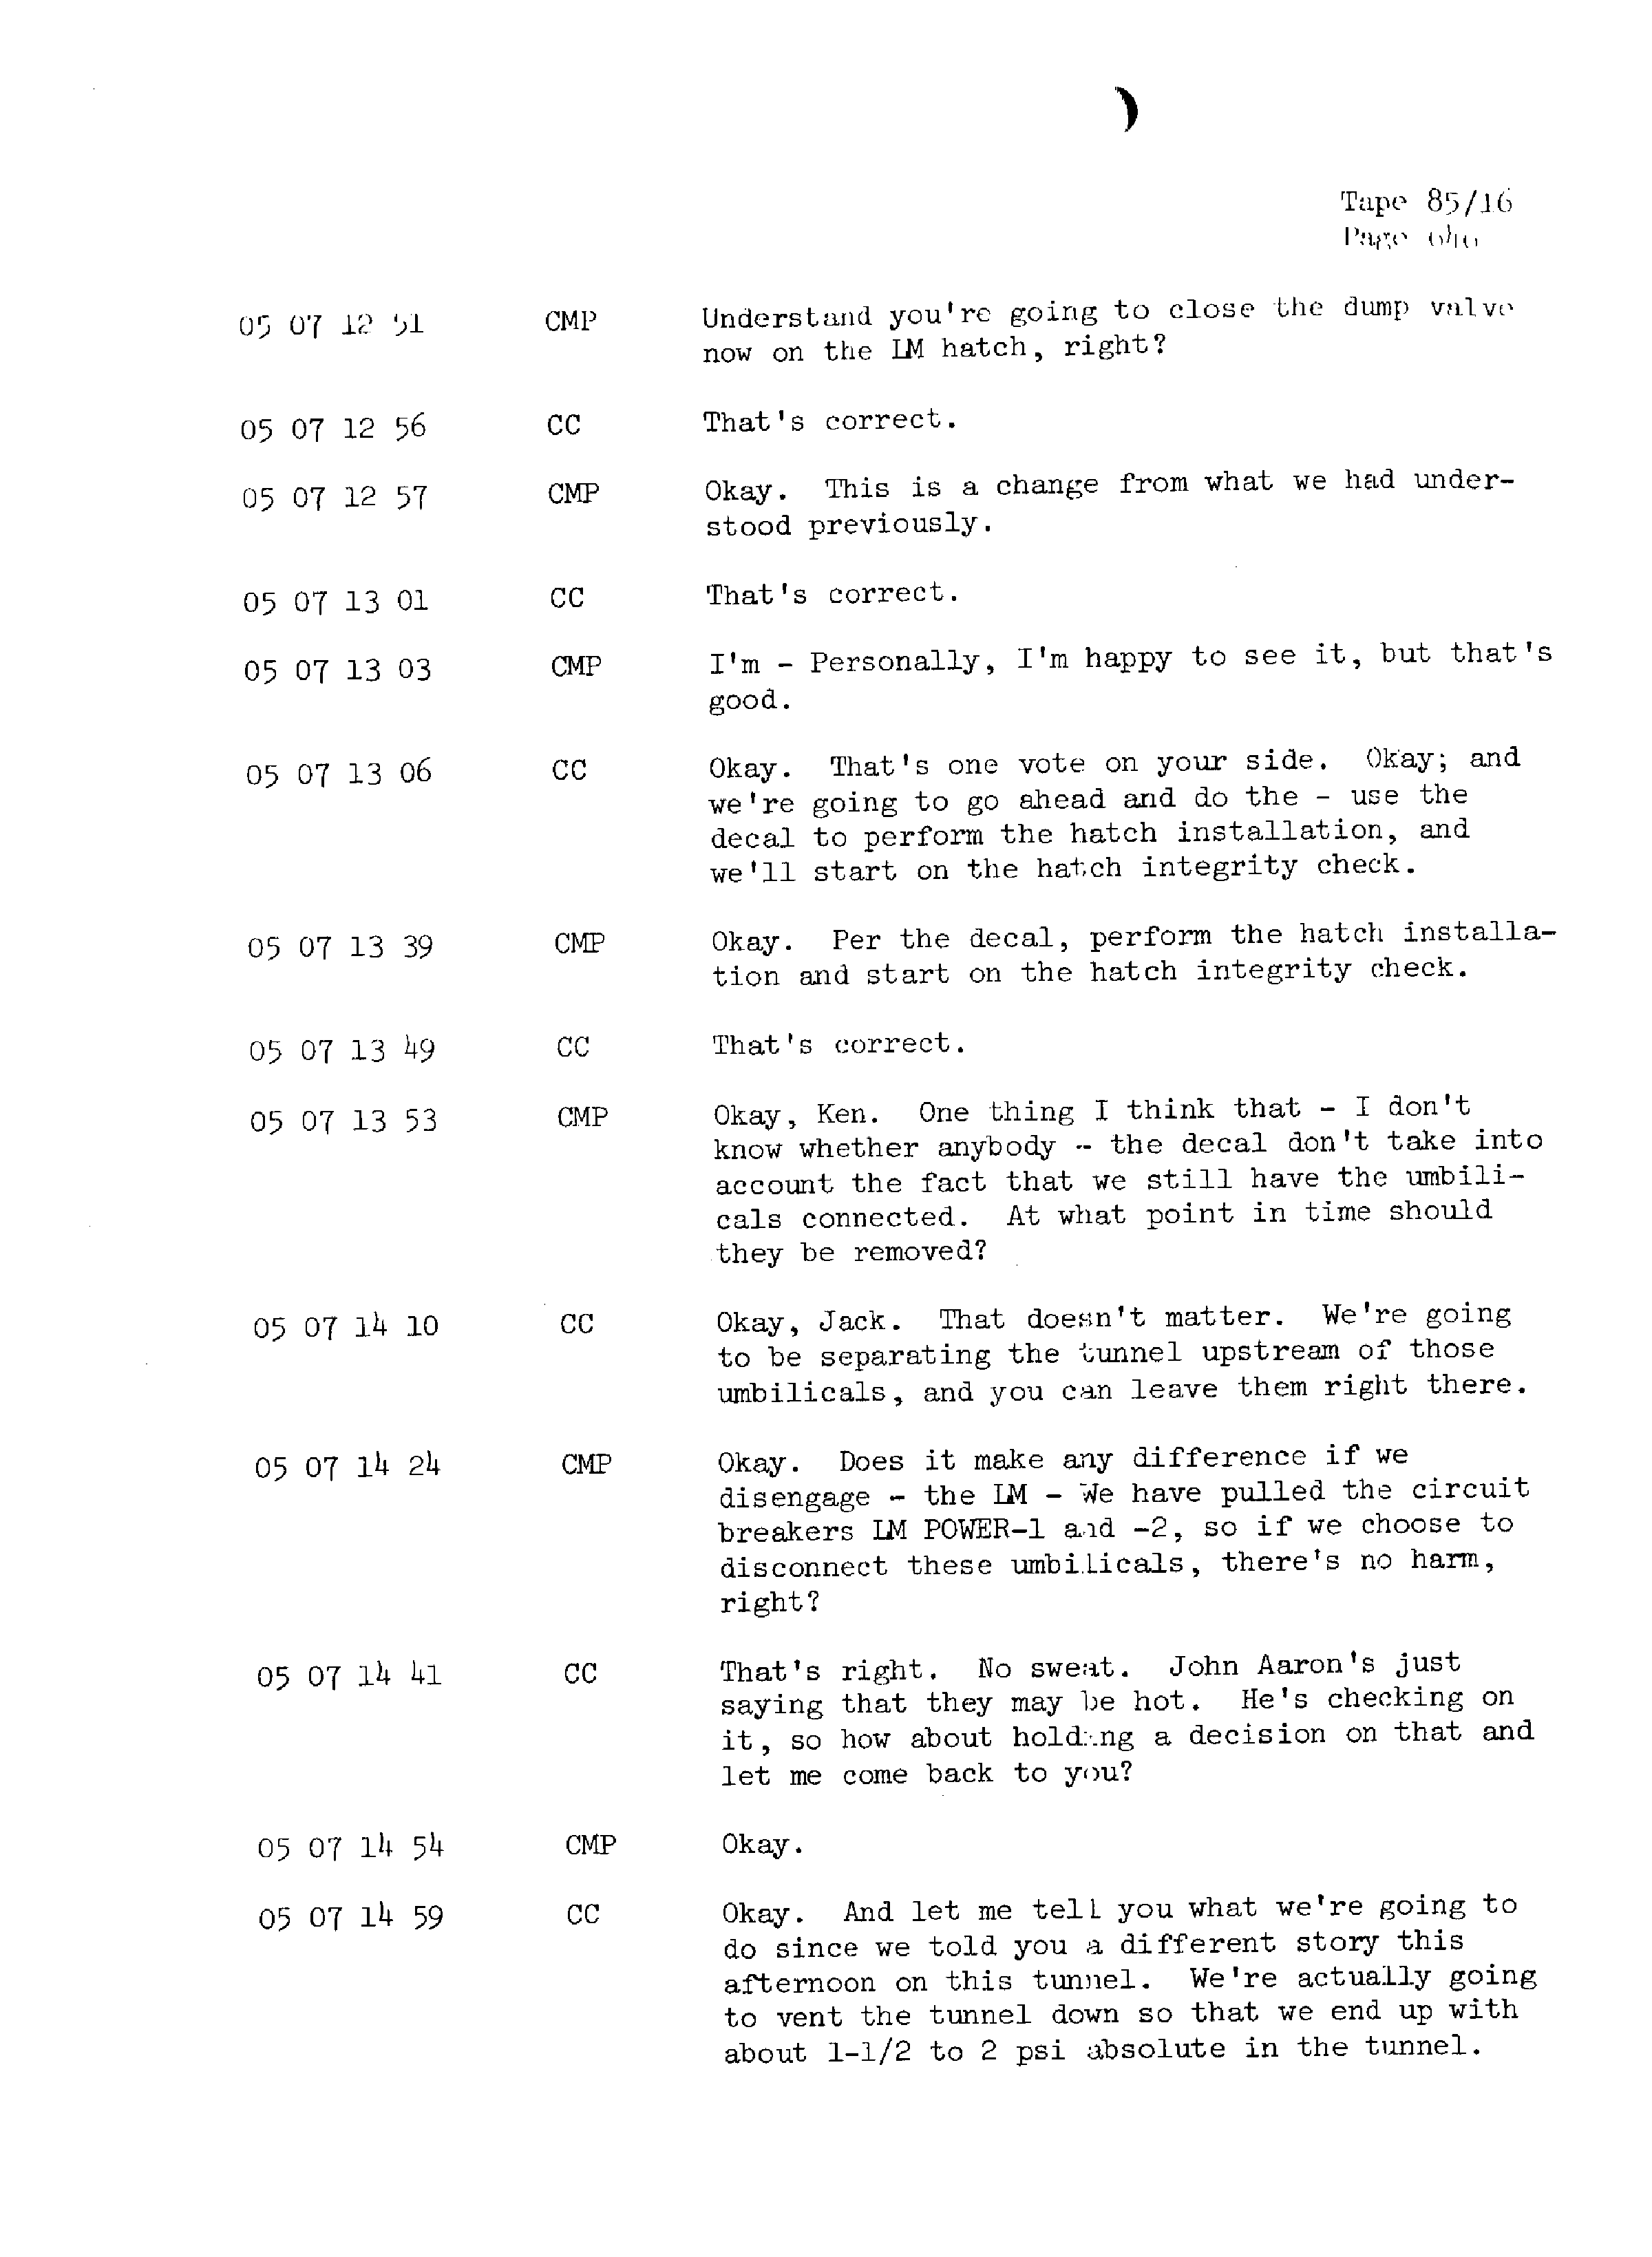 Page 653 of Apollo 13’s original transcript